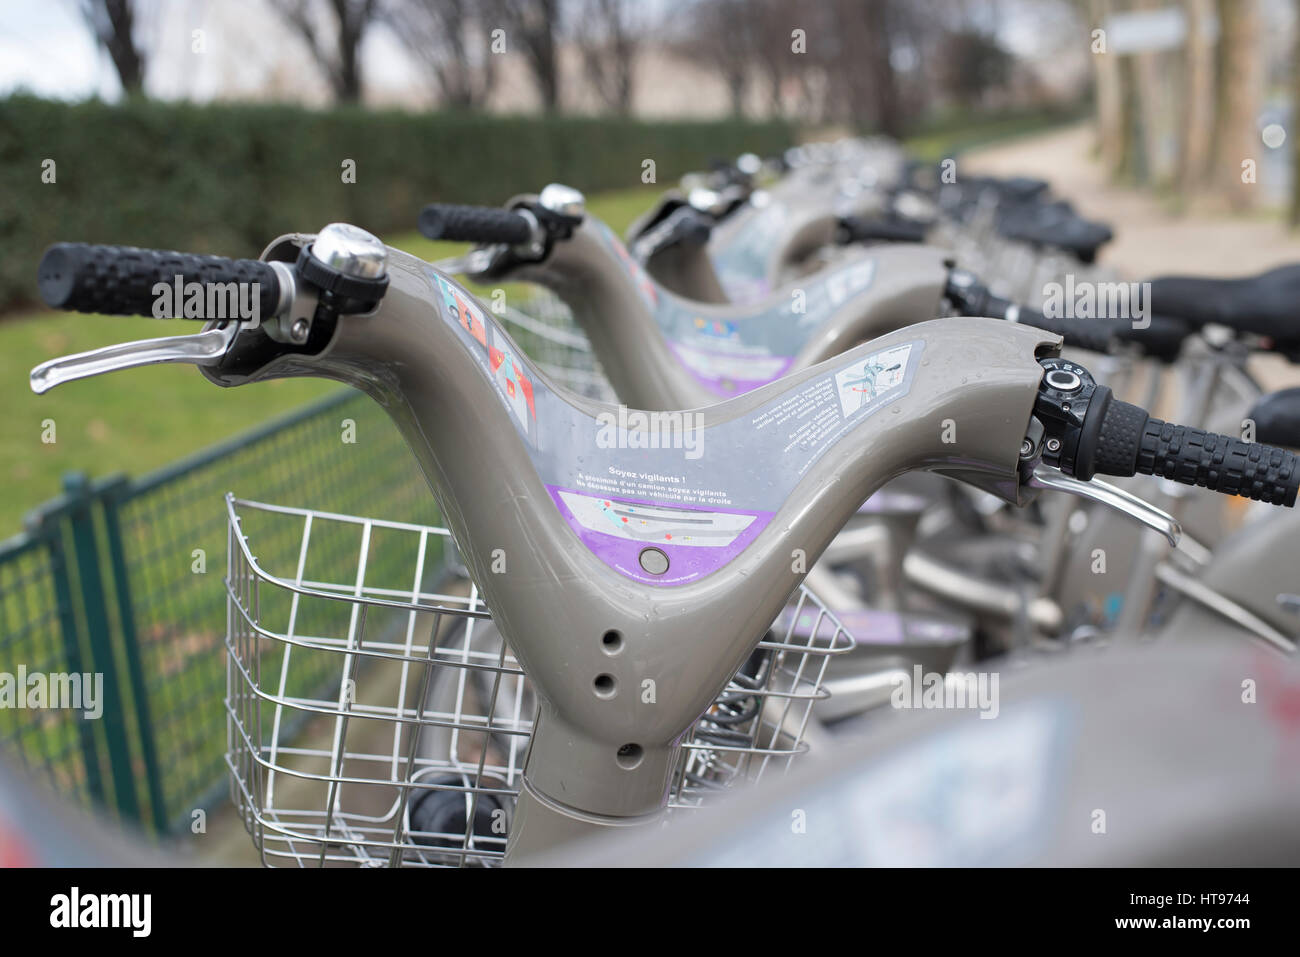 Regardant par-dessus le guidon d'une rangée d'un service de location de vélos Velib' à Paris France. Banque D'Images